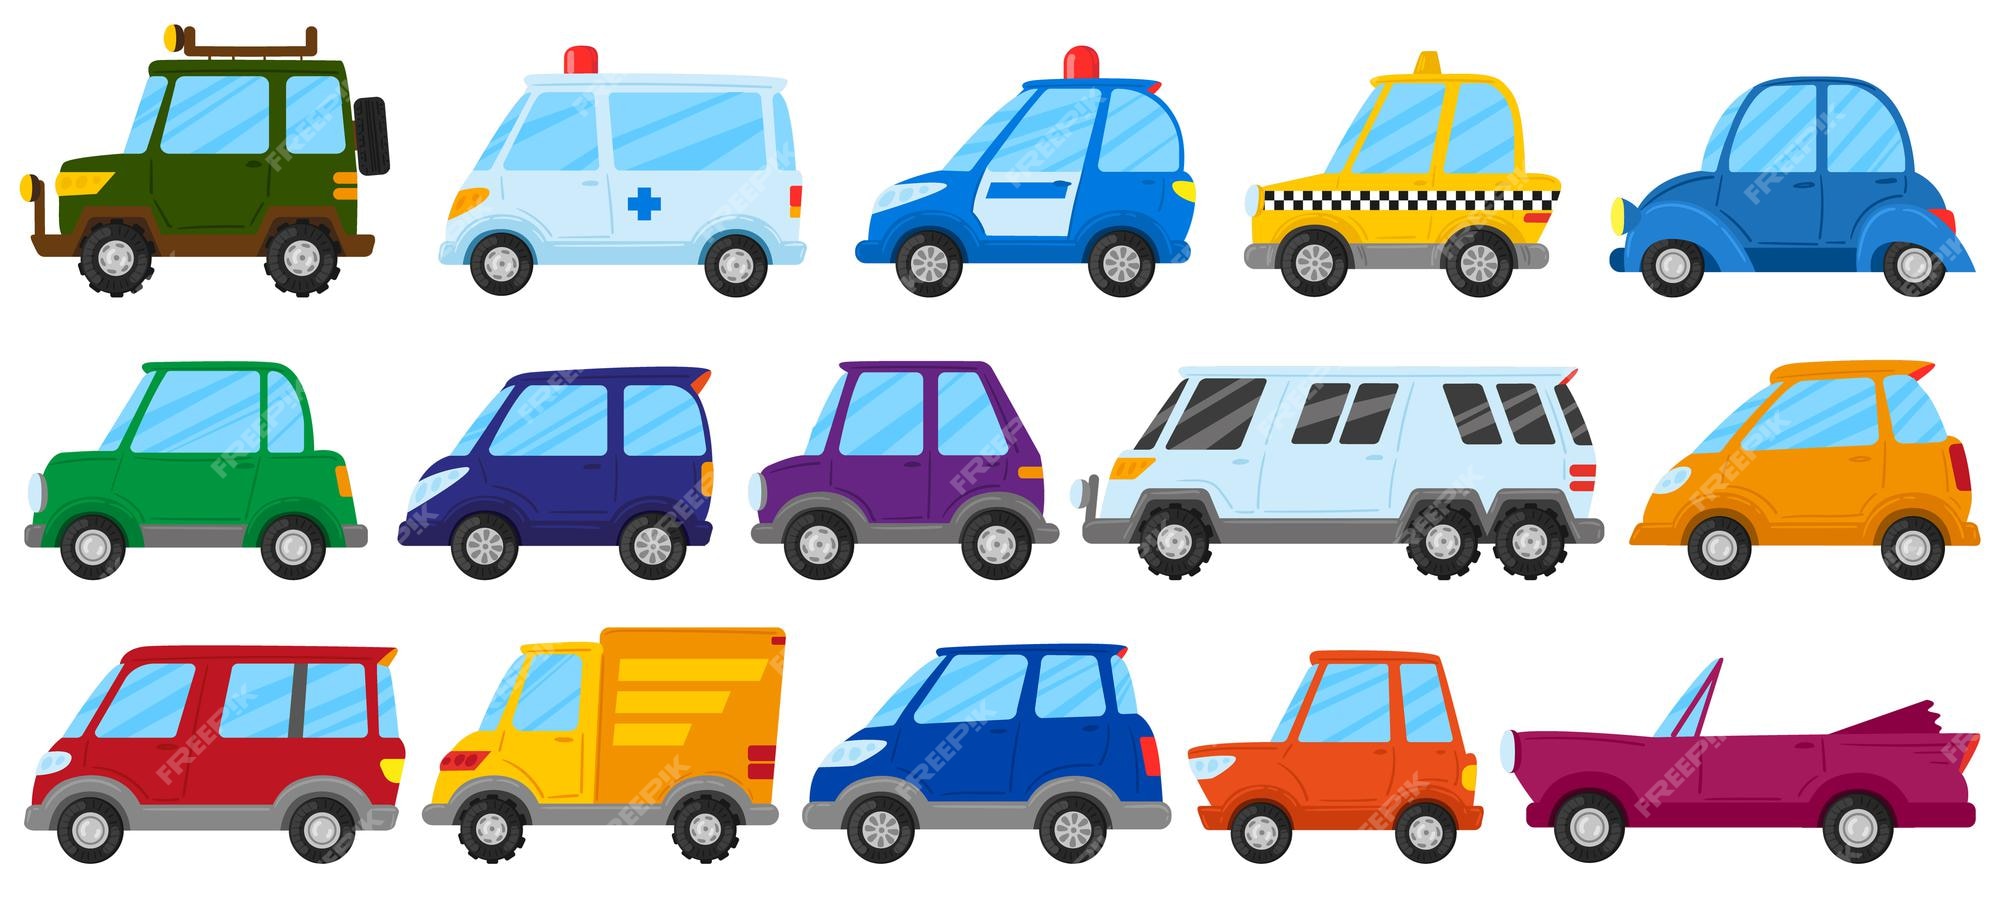 Carros de juguete para niños de dibujos transporte de juego lindo. coche de juguete para niños, camión, ambulancia y coche de policía conjunto de ilustraciones vectoriales. vehículos infantiles coloridos Vector